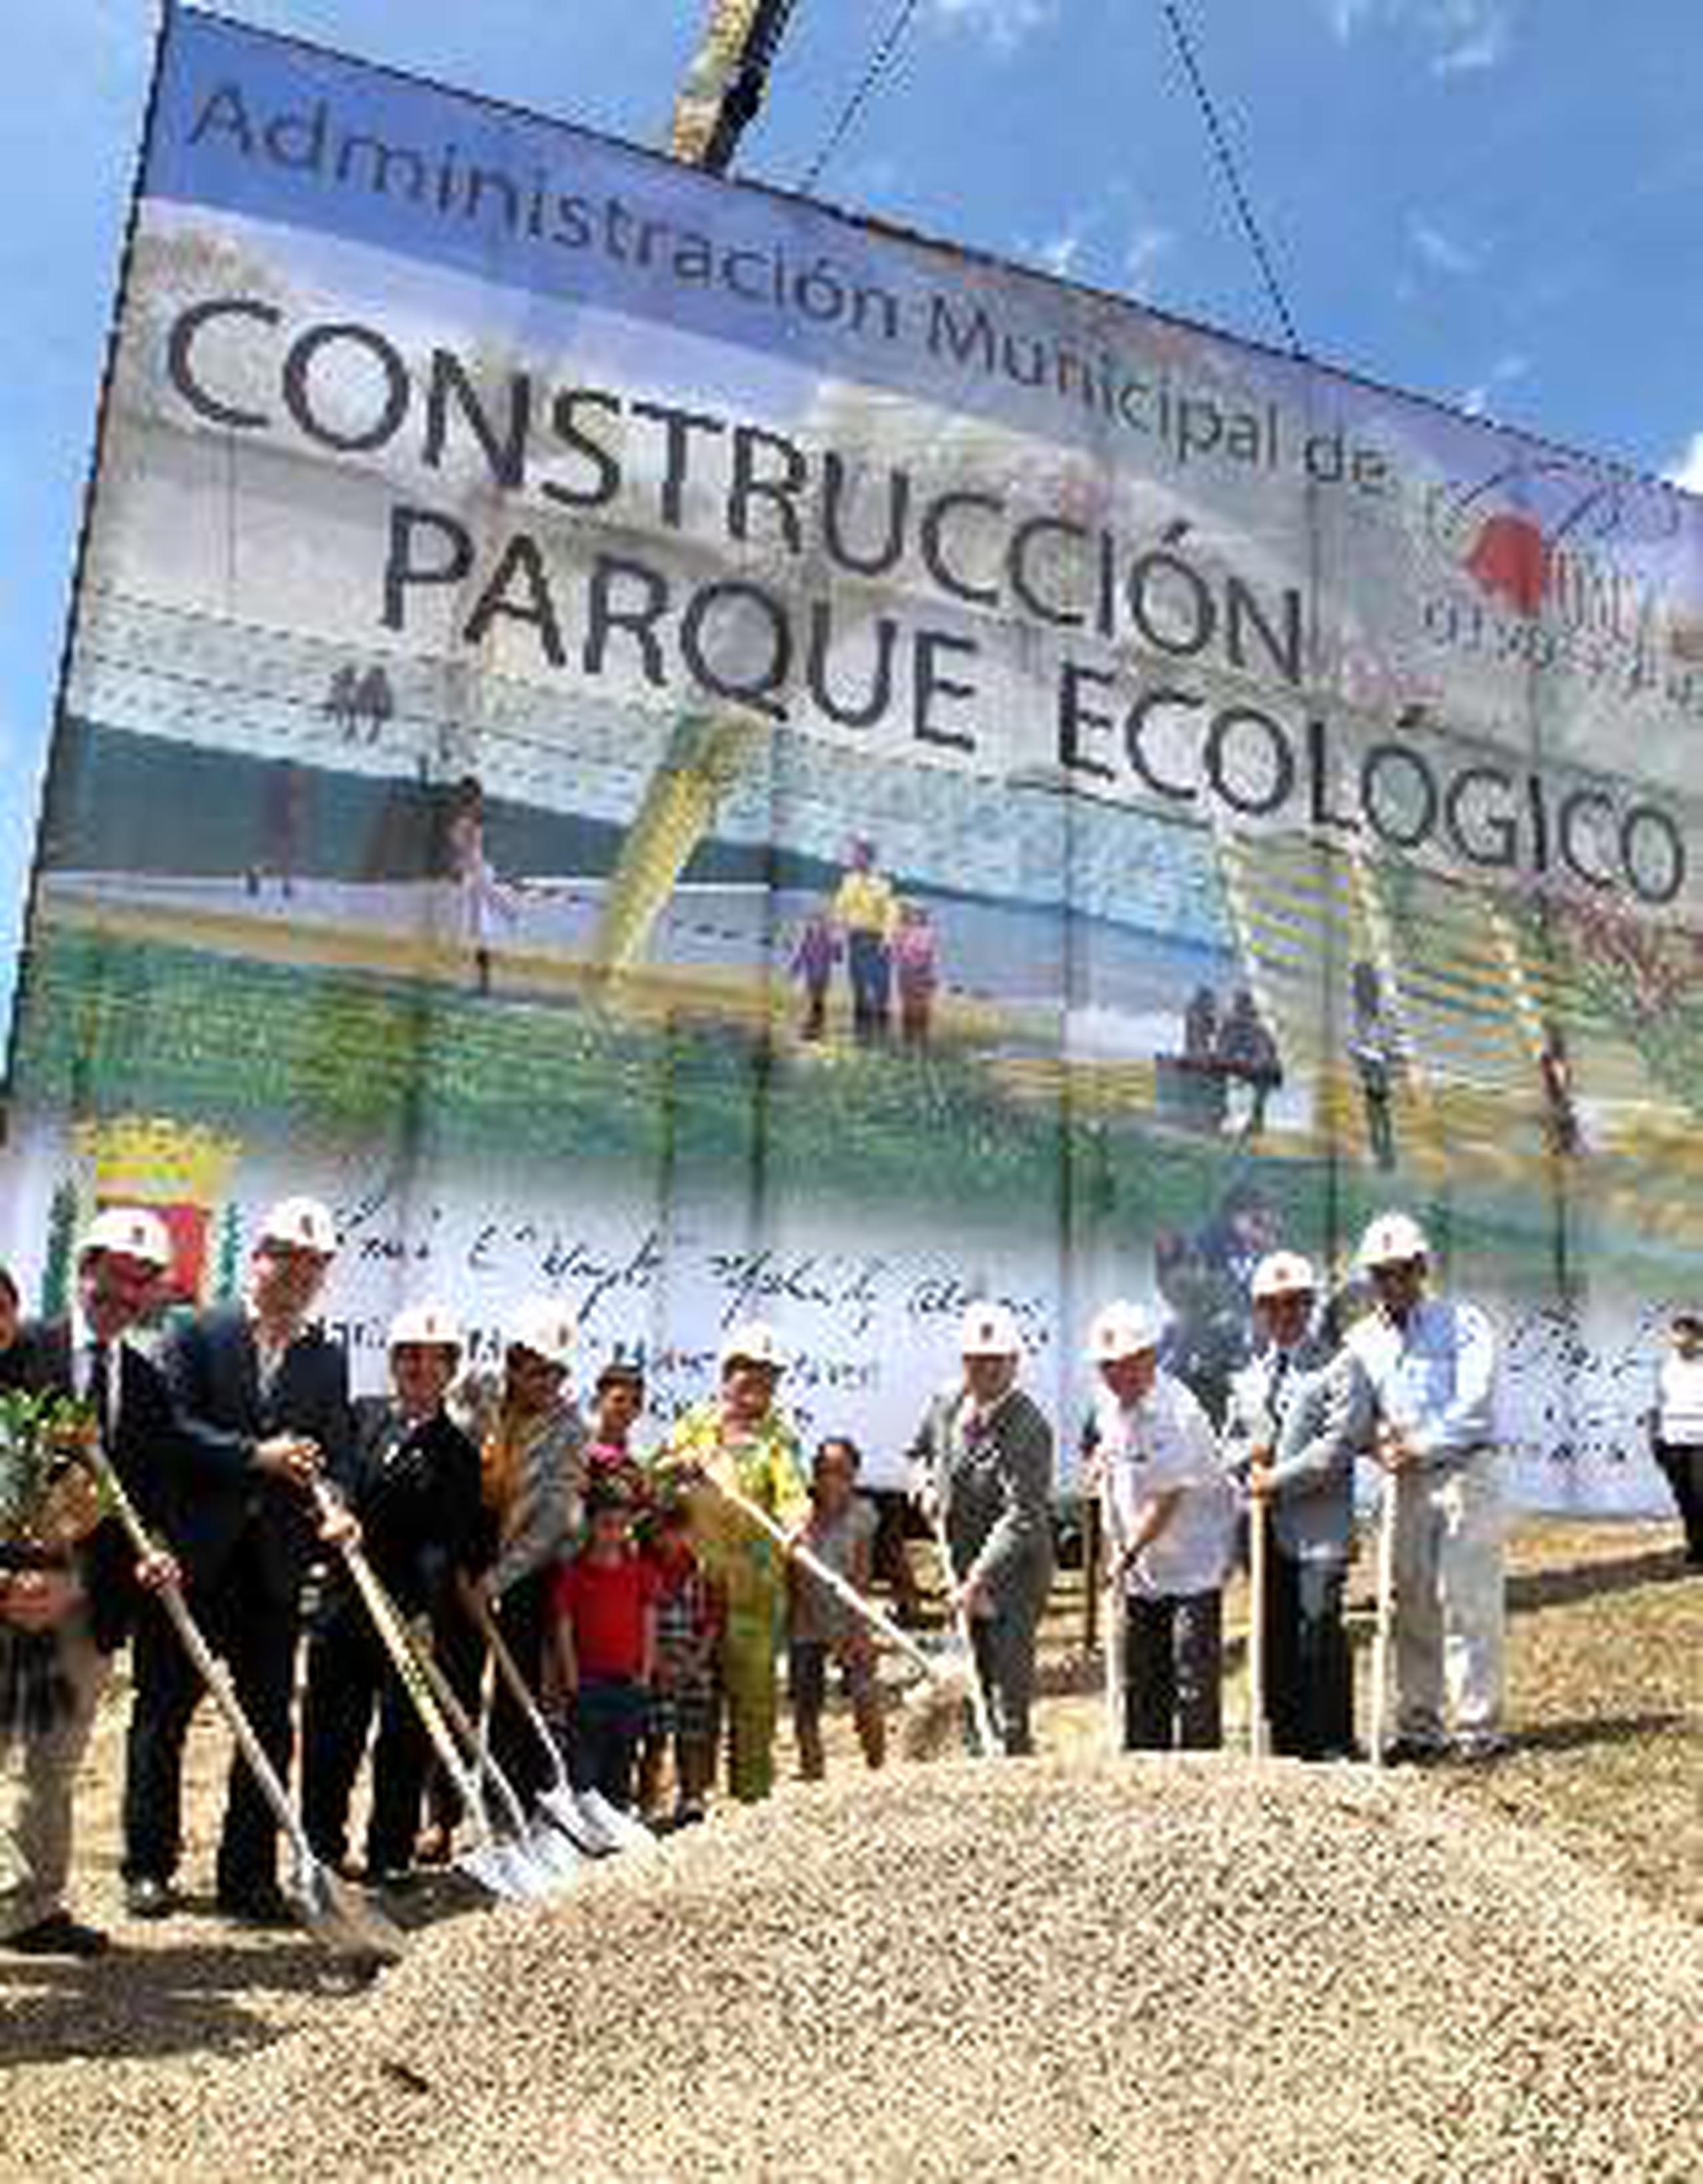  Durante la tradicional ceremonia, Meléndez dijo que el proyecto  se  logró mediante un acuerdo colaborativo entre el Municipio de Ponce  y la Universidad Interamericana.&nbsp;<font color="yellow">(Suministrada)</font>